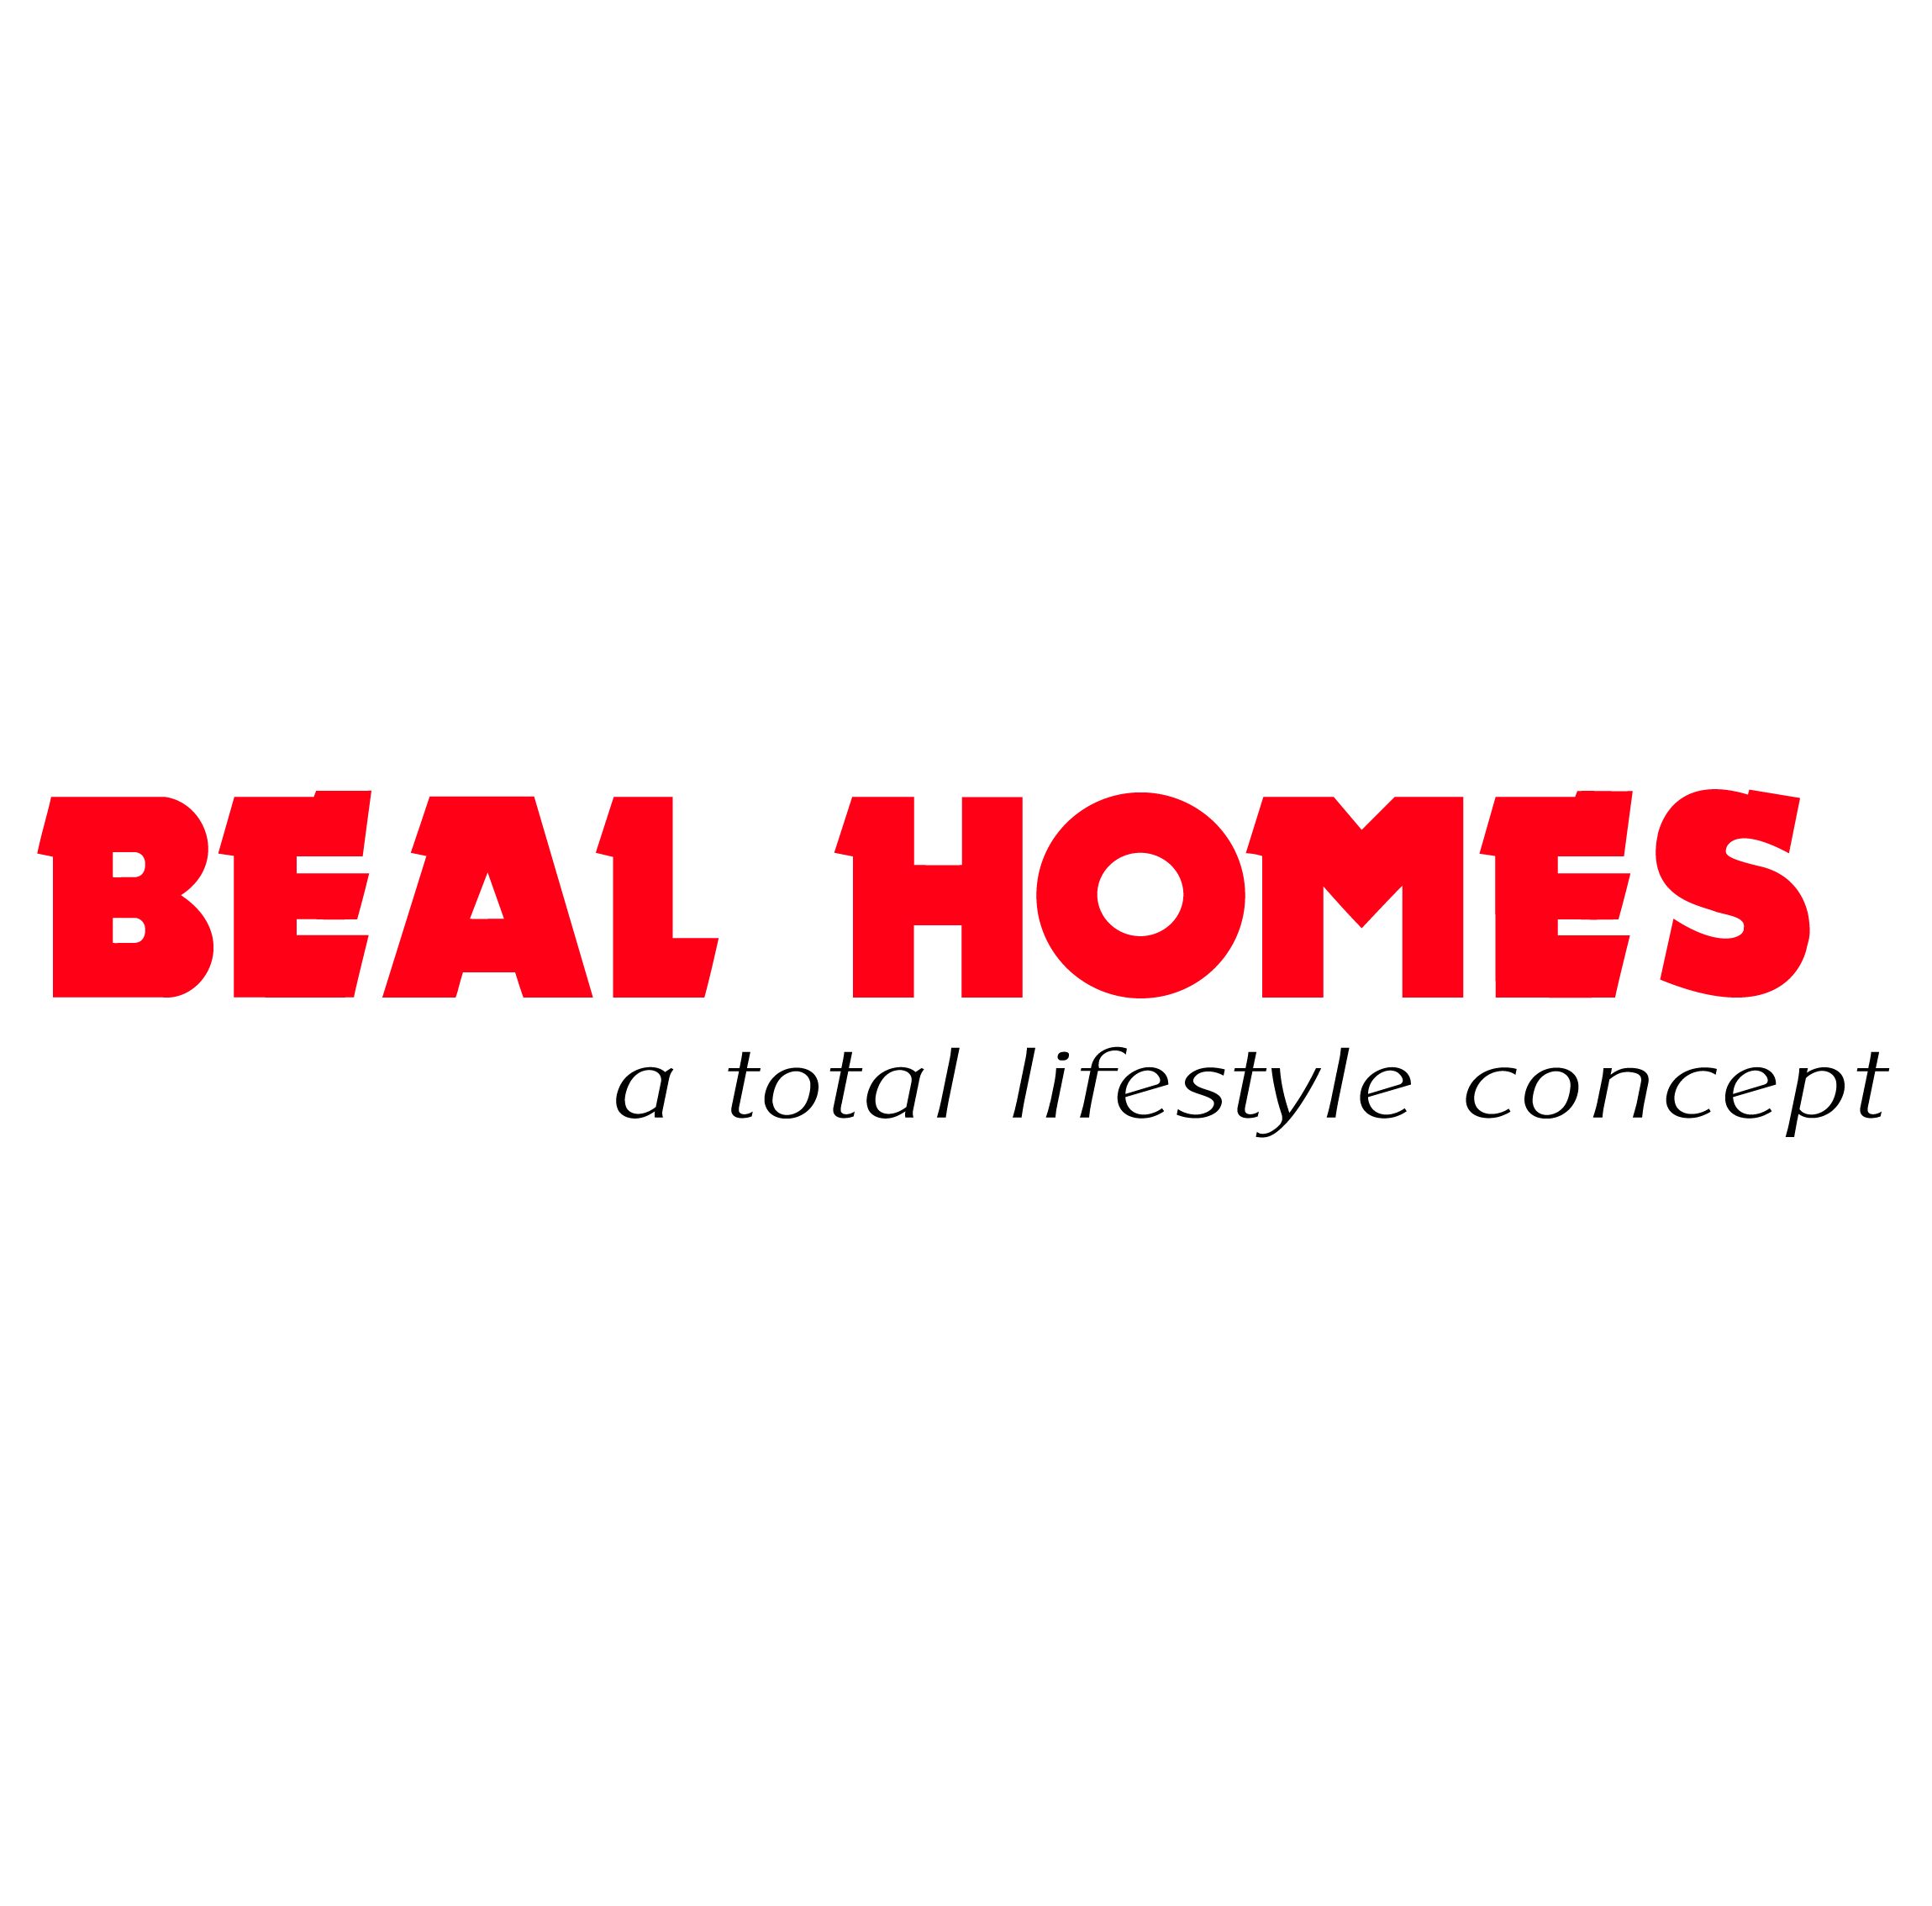 Beal Homes